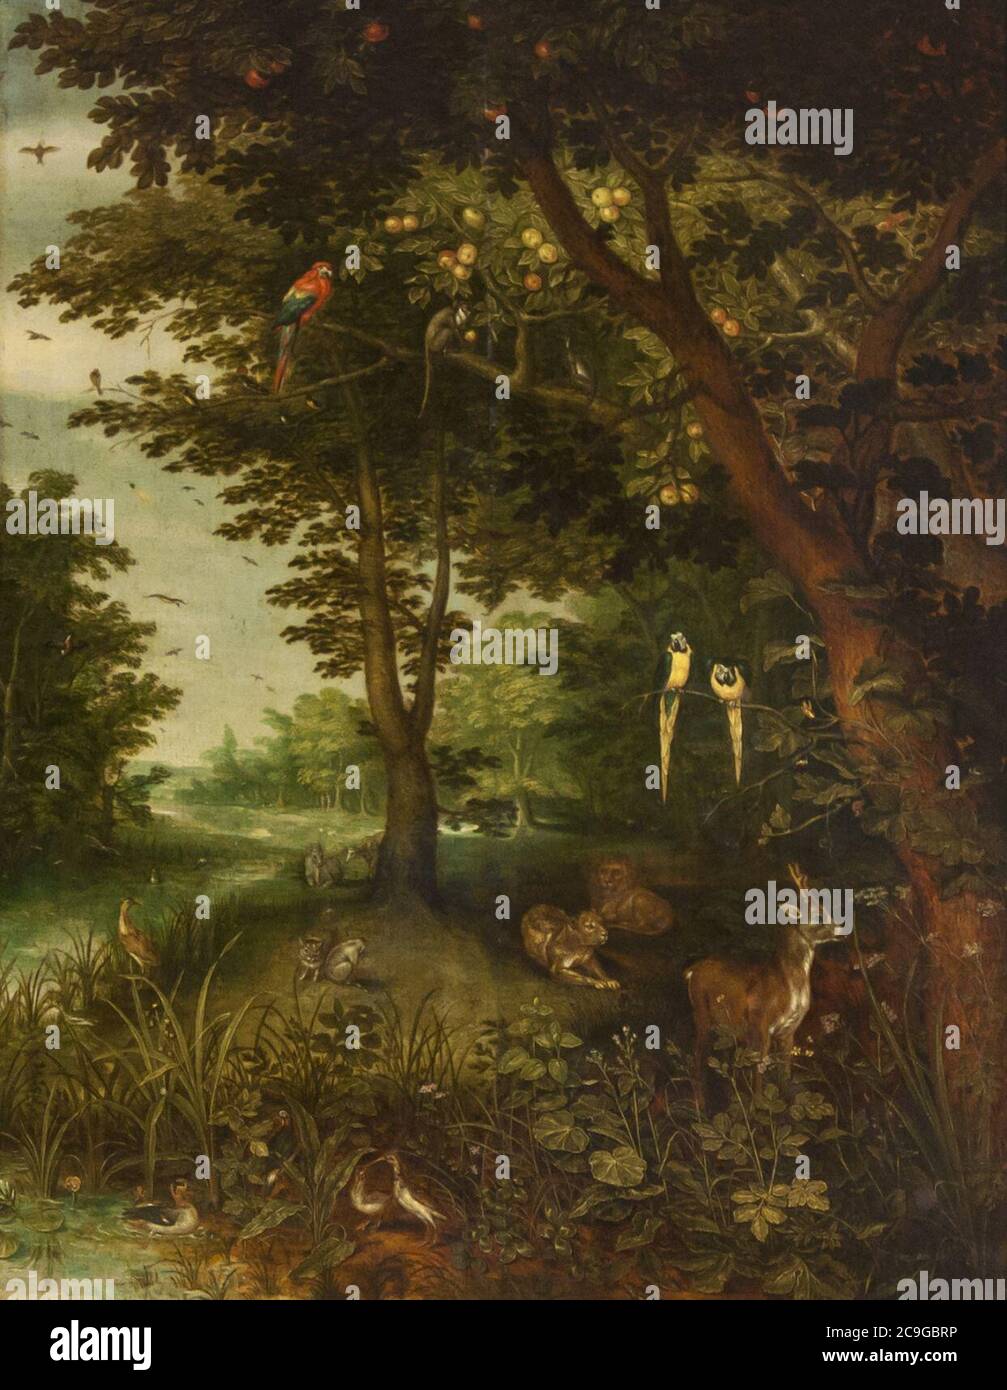 Jan Brueghel de Oude (1568-1625) - Het paradijs Met dieren (1620) - Sevilla Bellas Artes 22-03-2011 11-08-00. Foto Stock